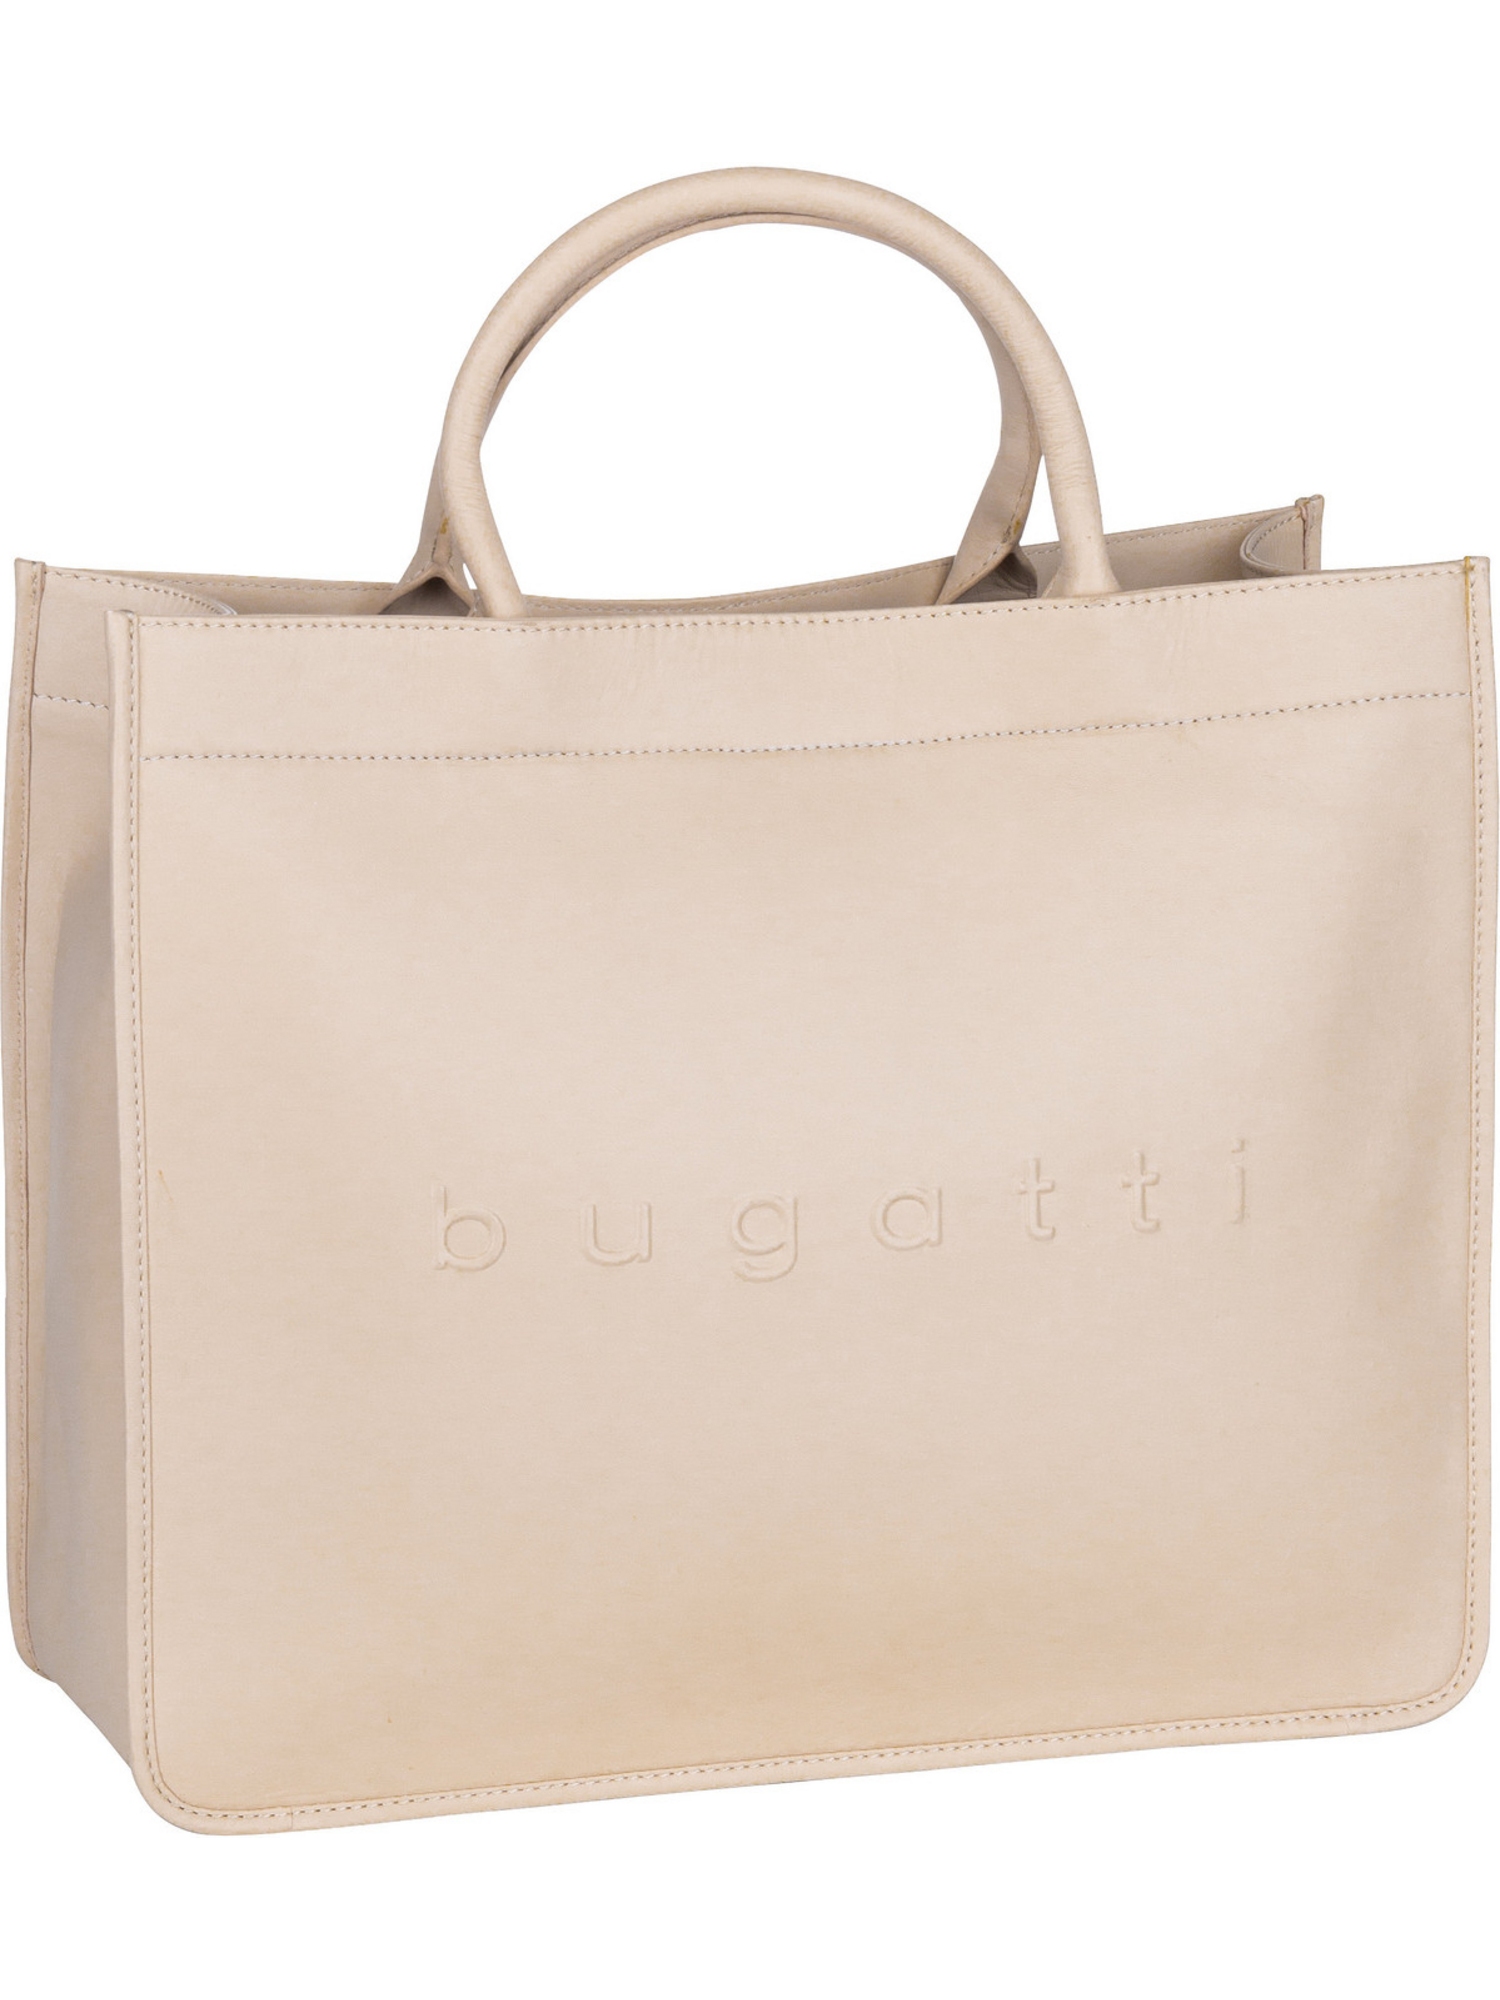 Сумка шоппер Bugatti Handtasche Daphne Tote Bag, бежевый